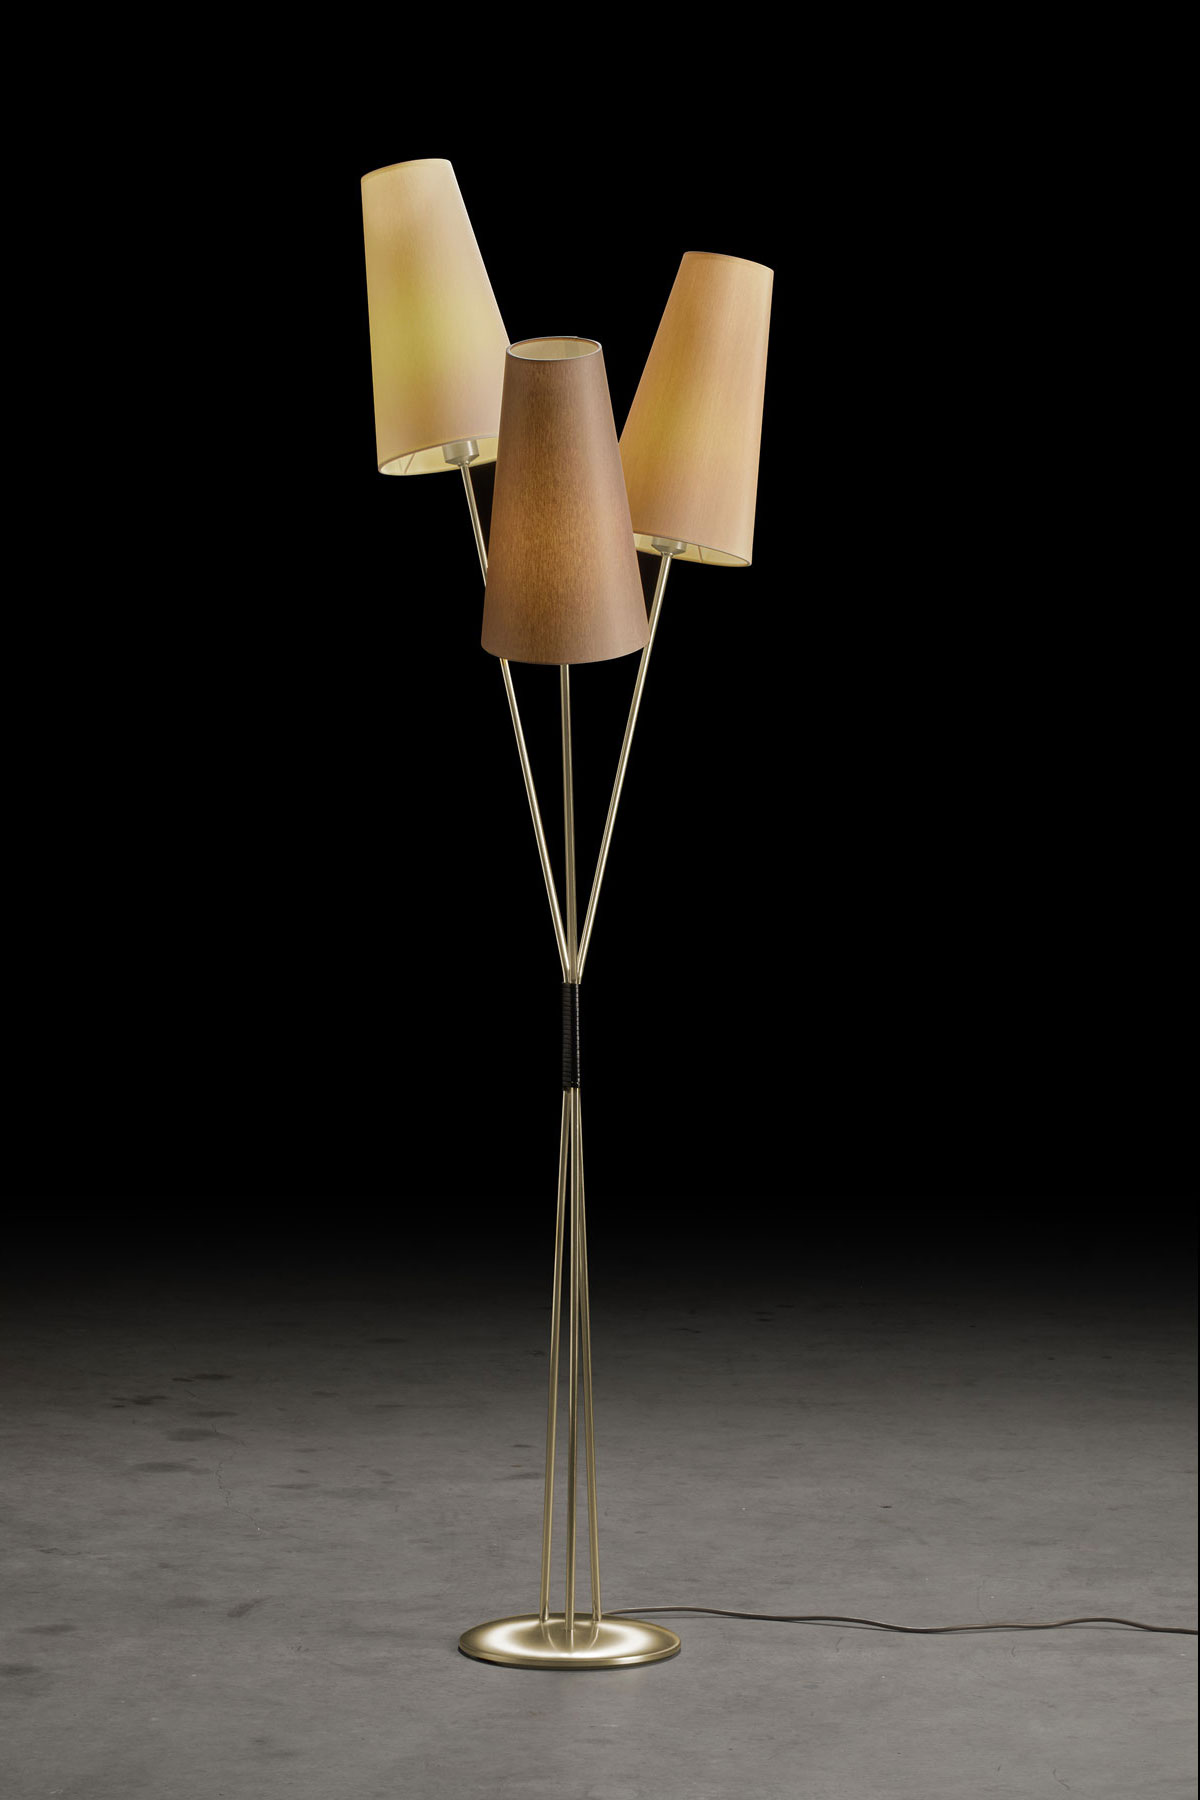 Zweiflammige Stehlampe im 50er Jahre-Look mit Stoffschirmen FIFTIES, viele Farben: Gestell in Messing matt, Schirme in Champagner, Sand, Taupe  (BEISPIELBILD vom dreiflammigen Modell)